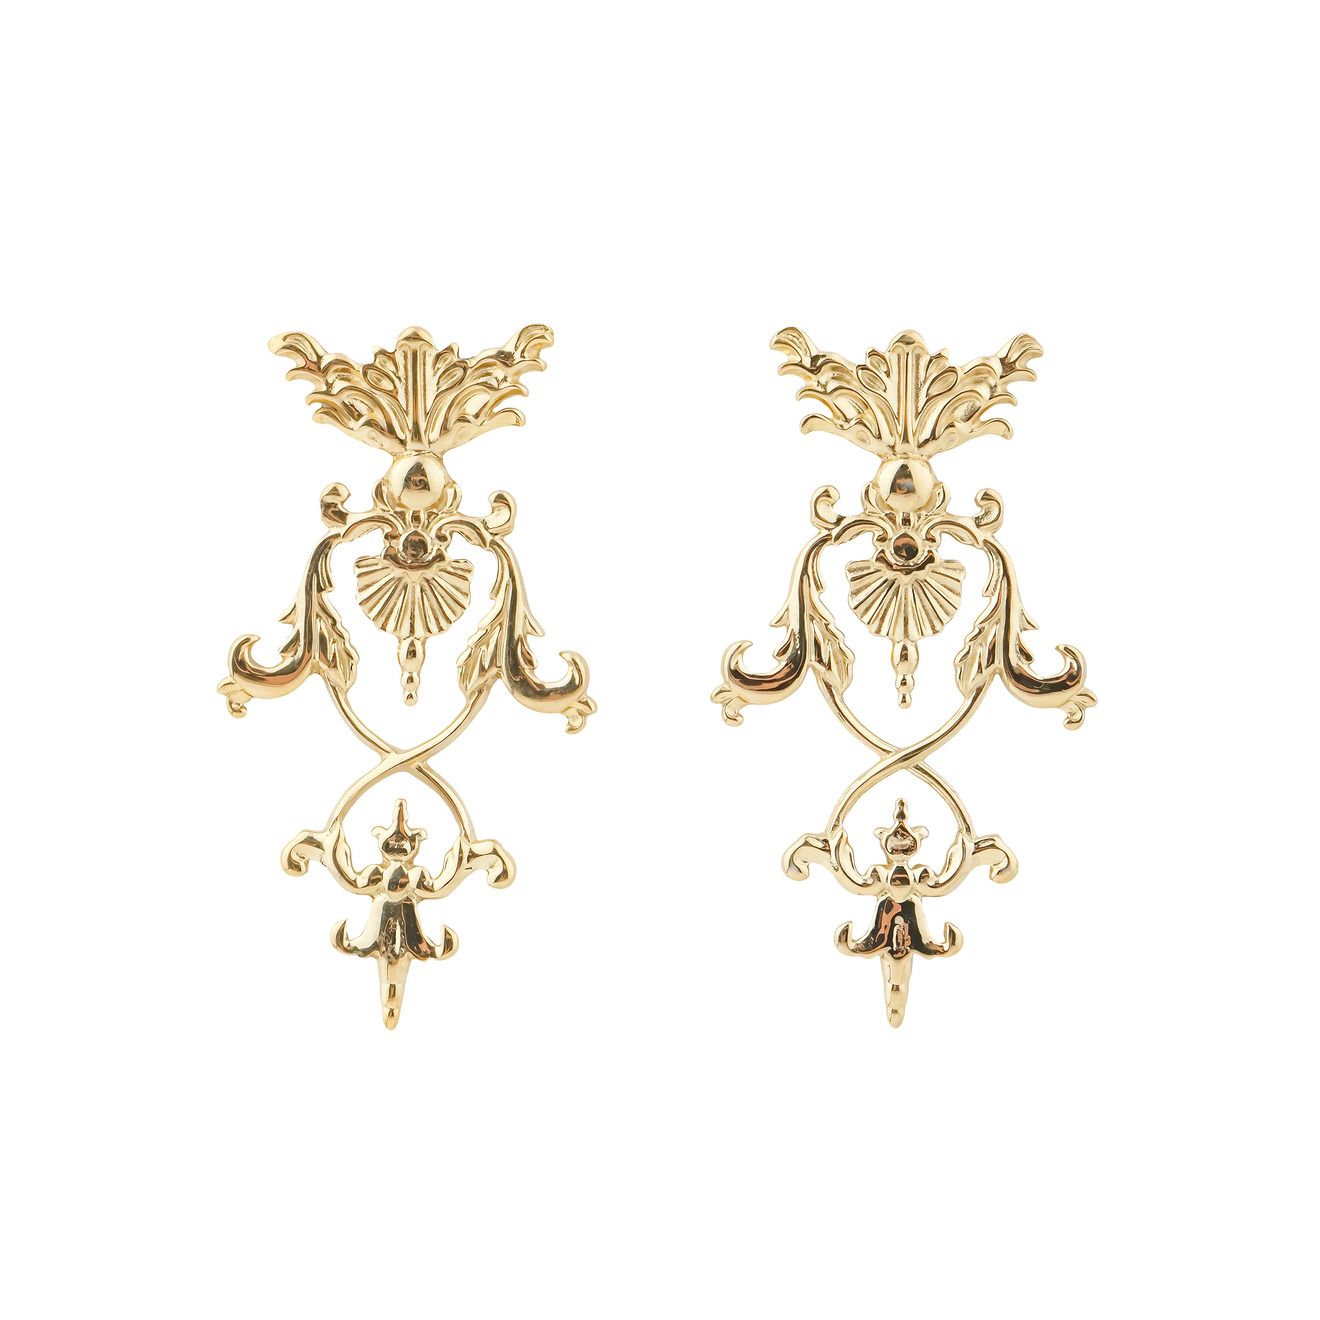 LUTA Jewelry Позолоченные серебряные серьги в барочном стиле luta jewelry позолоченный кафф из серебра на левое ухо в барочном стиле